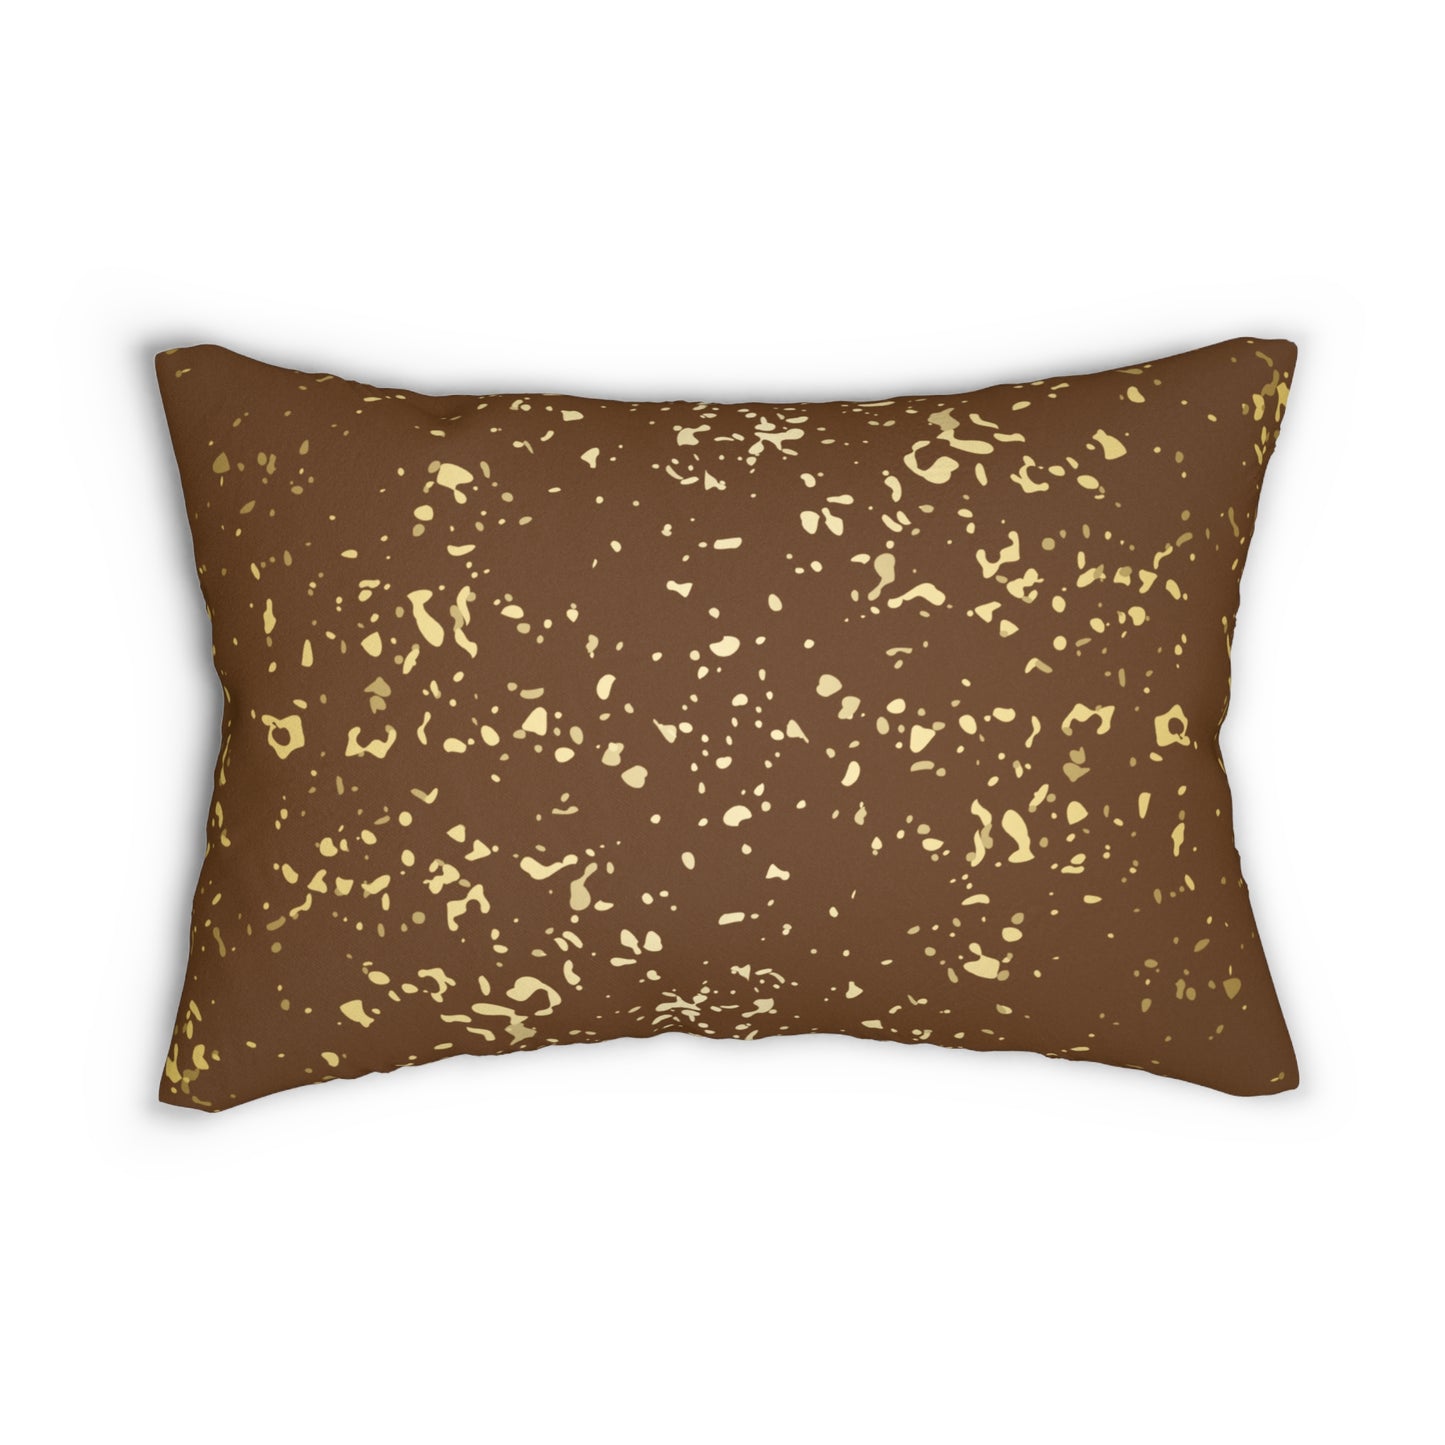 Almohada decorativa con escamas marrones y doradas